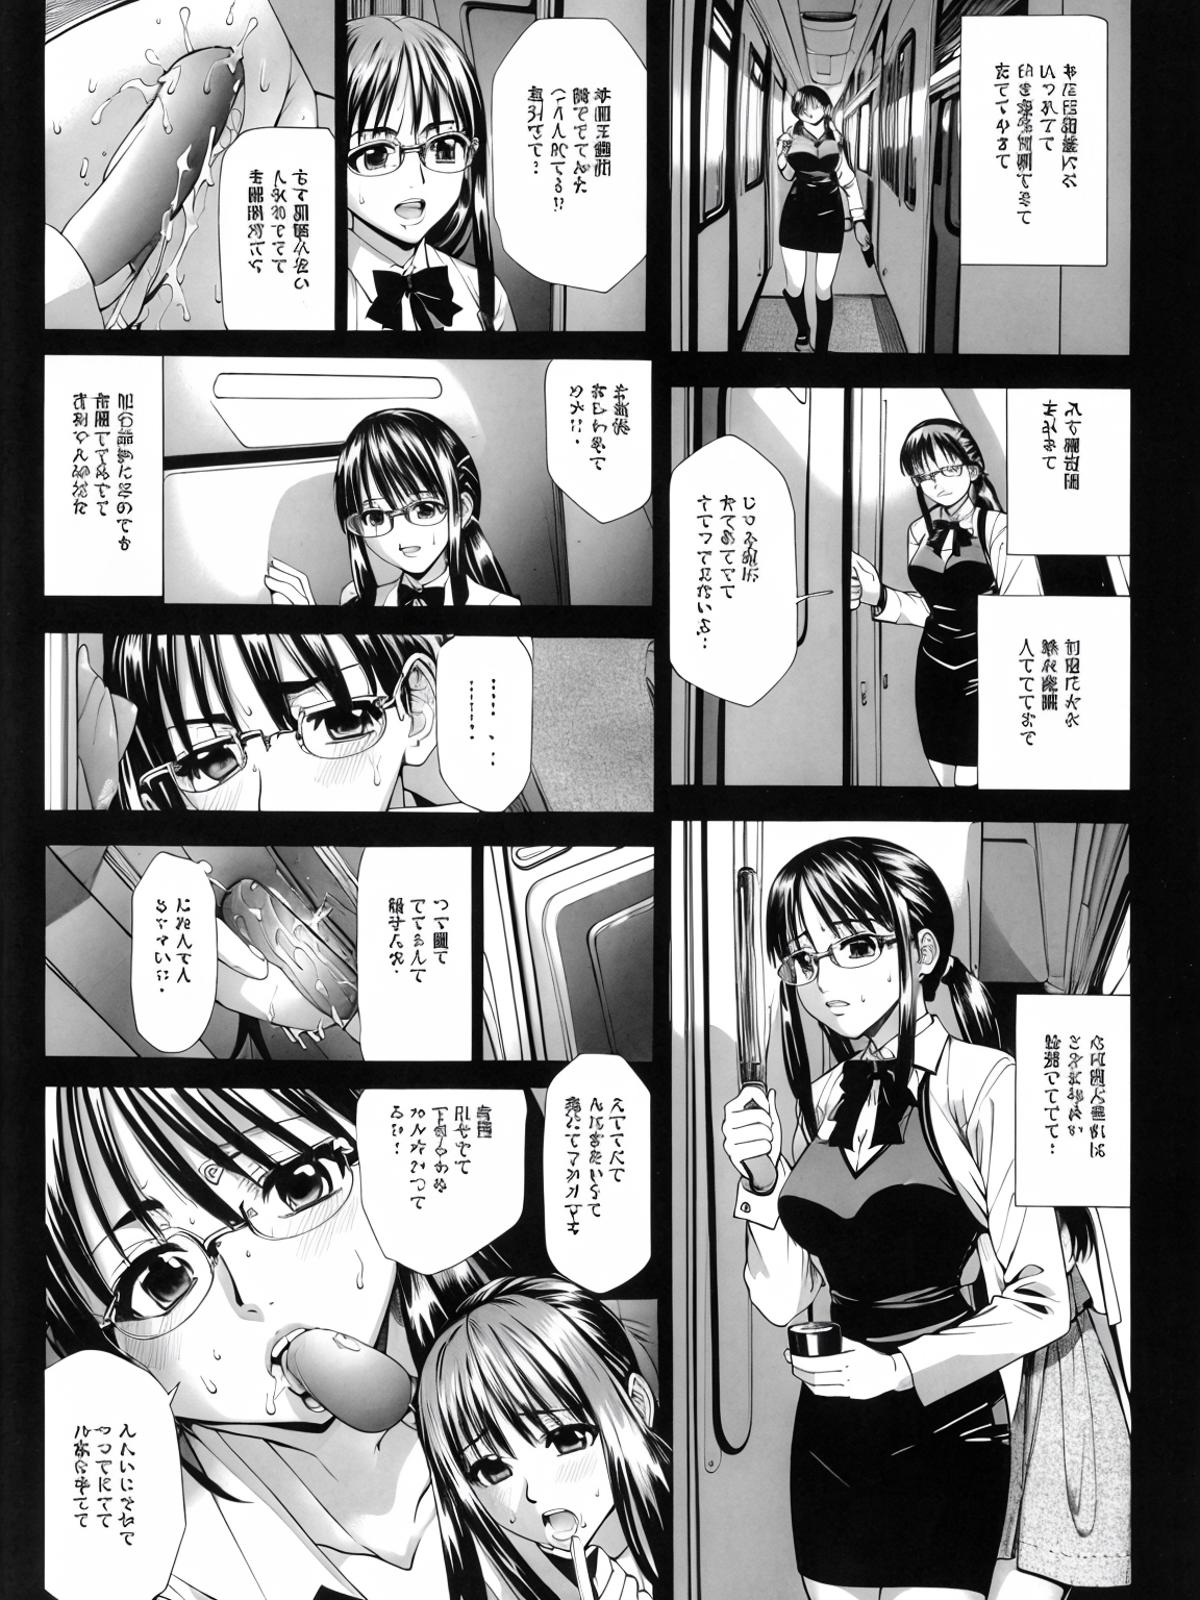 EdobComic02 (Manga) image by edobgames